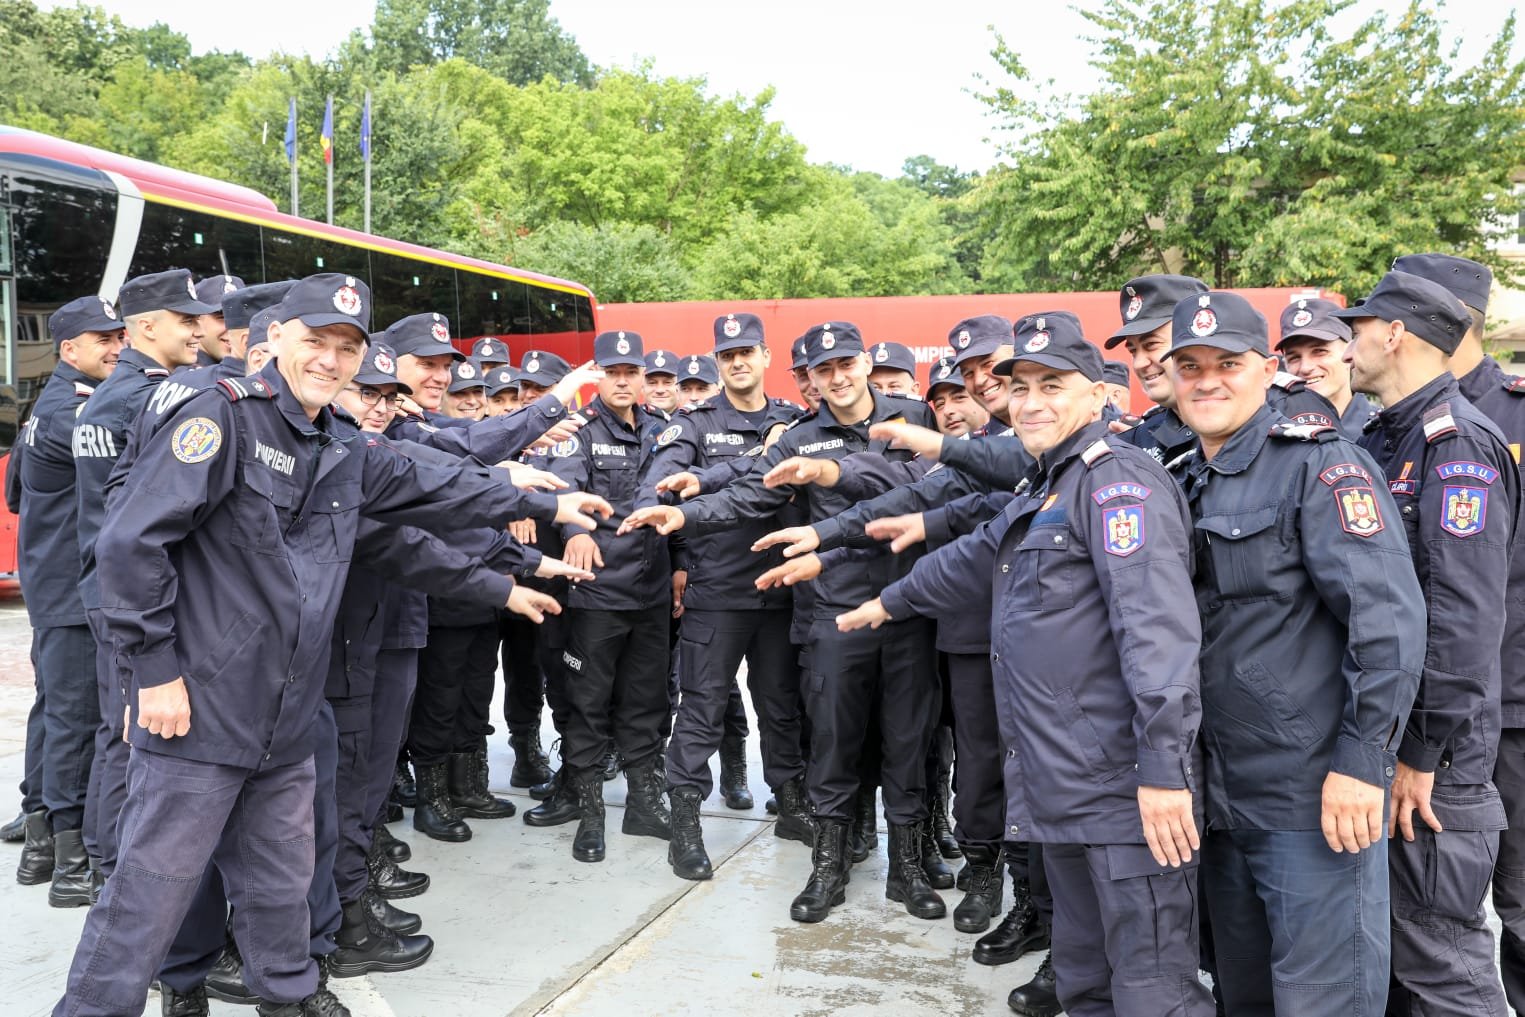  40 de pompieri români trimiși în Grecia să monitorizeze zonele cu risc de incendii